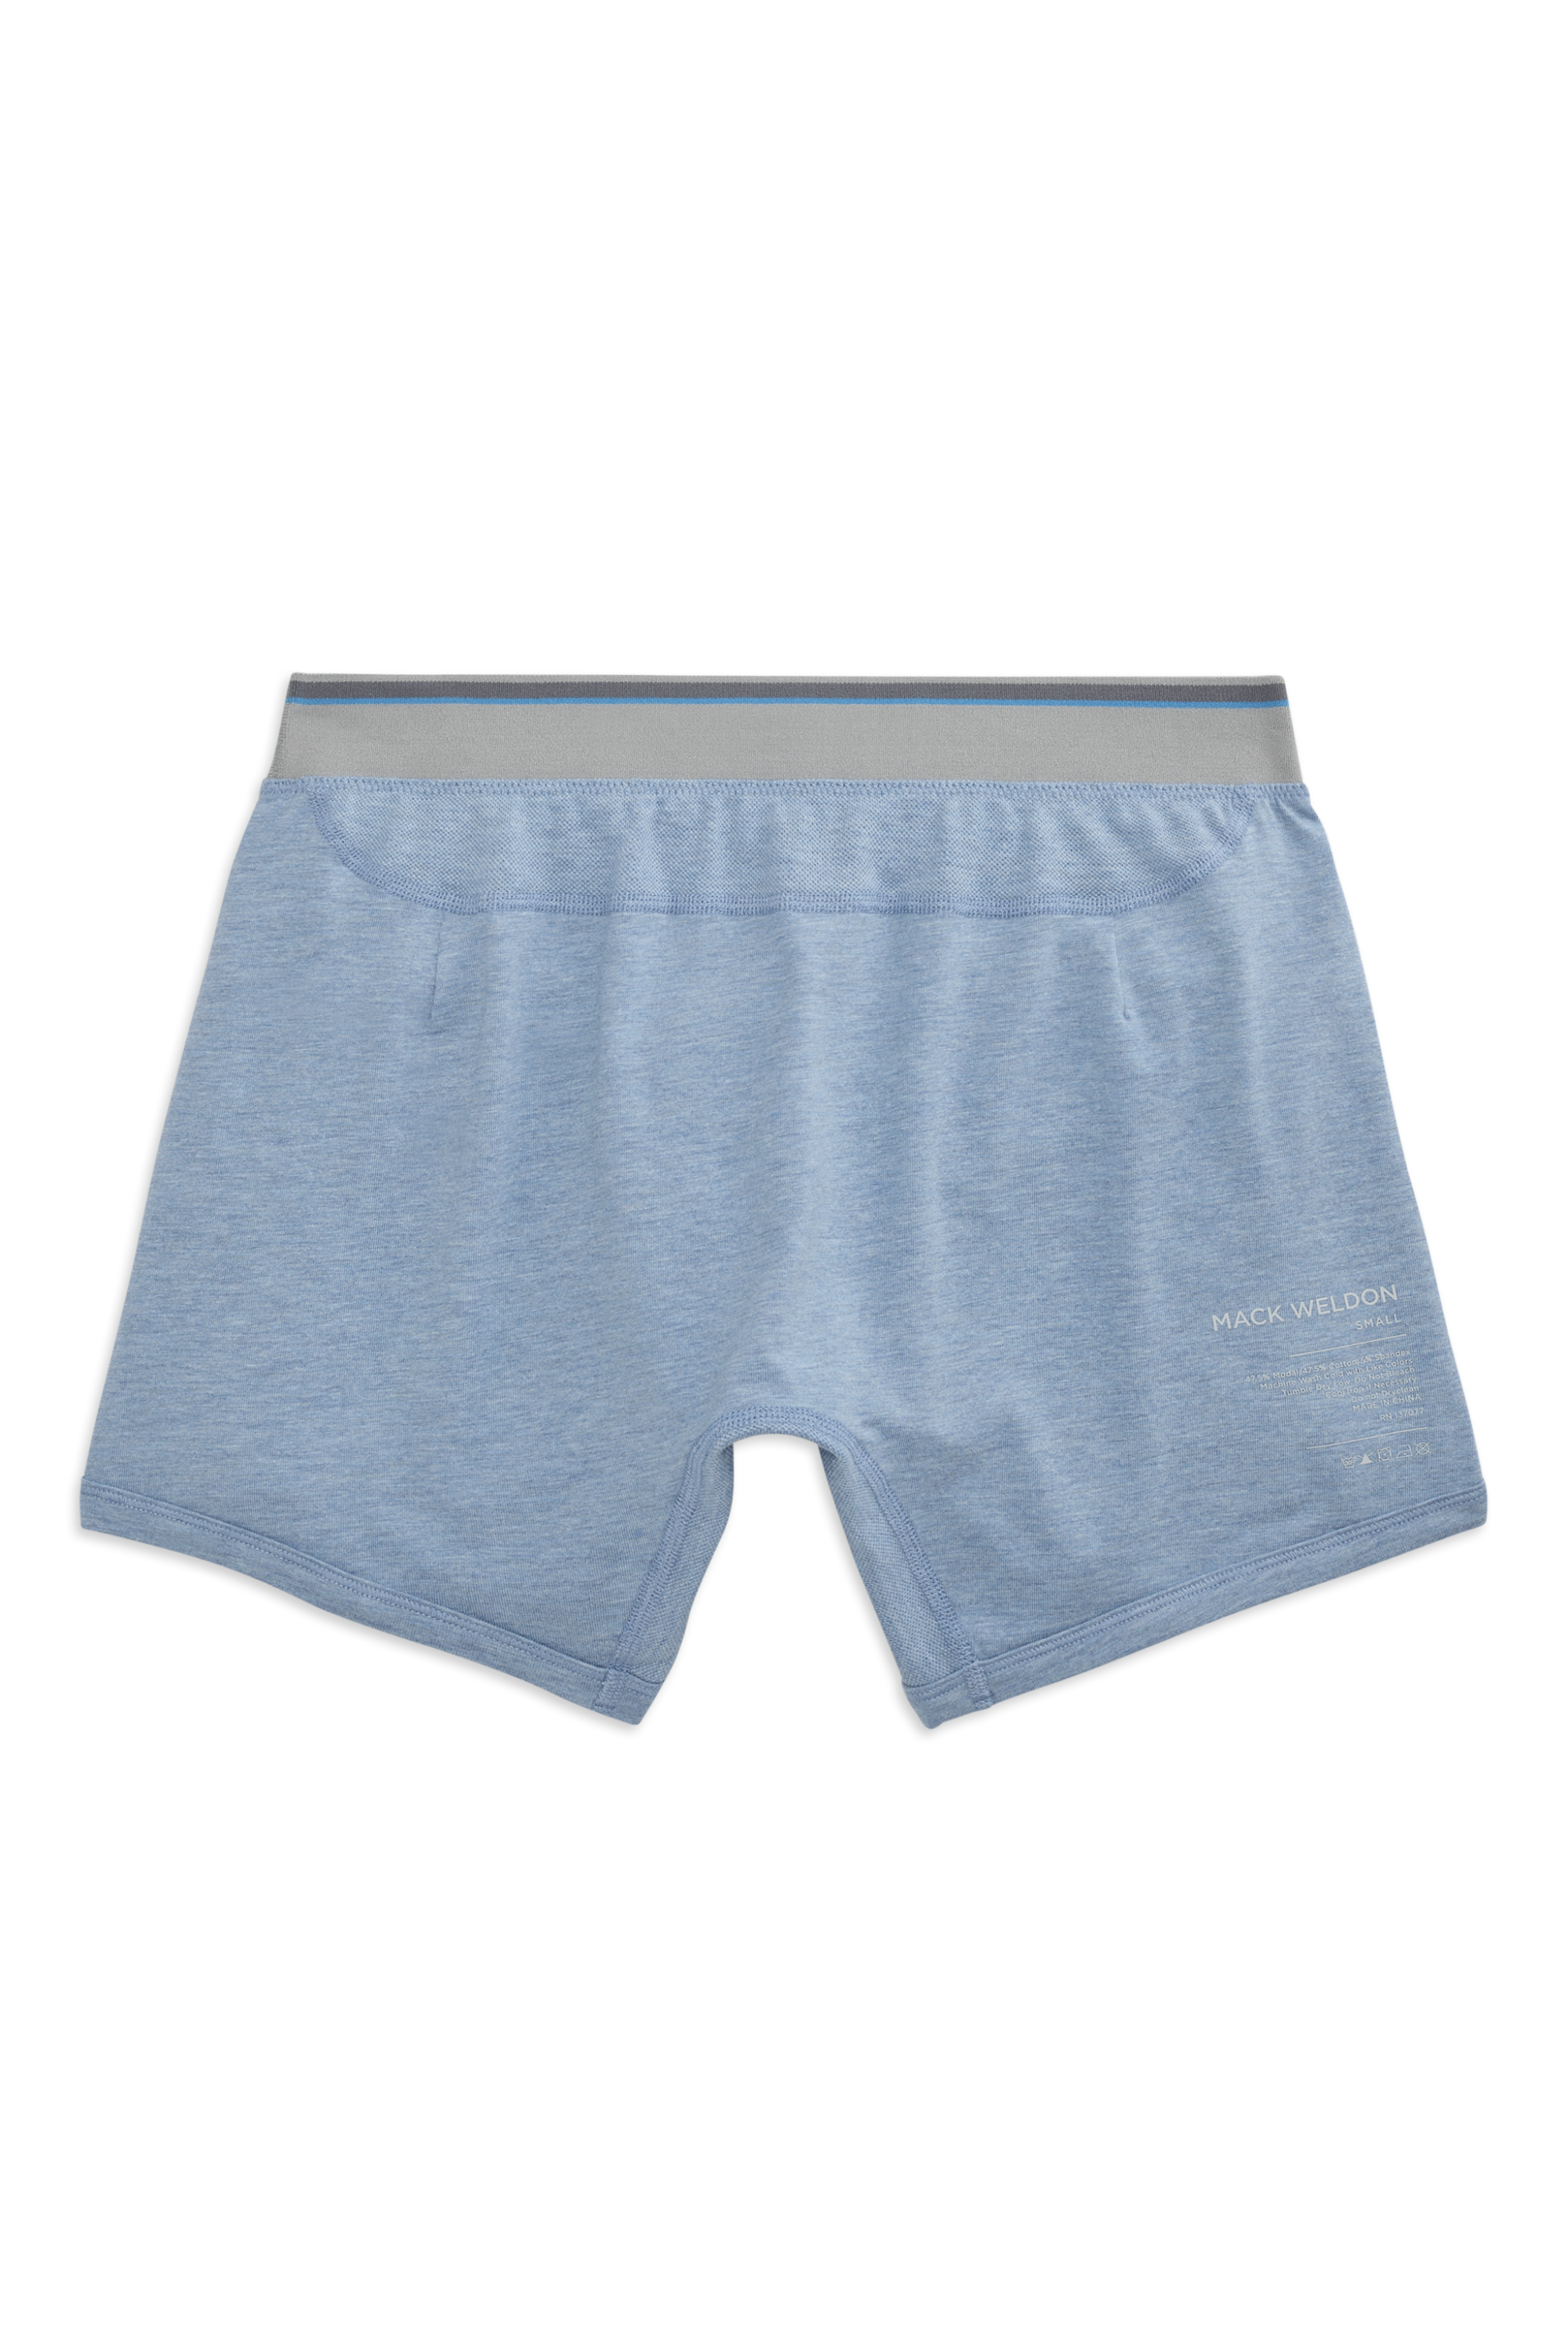 NWT Athletic Works Girls Seamless Briefs Panties Underwear 5 pairs/pack sz  16,18